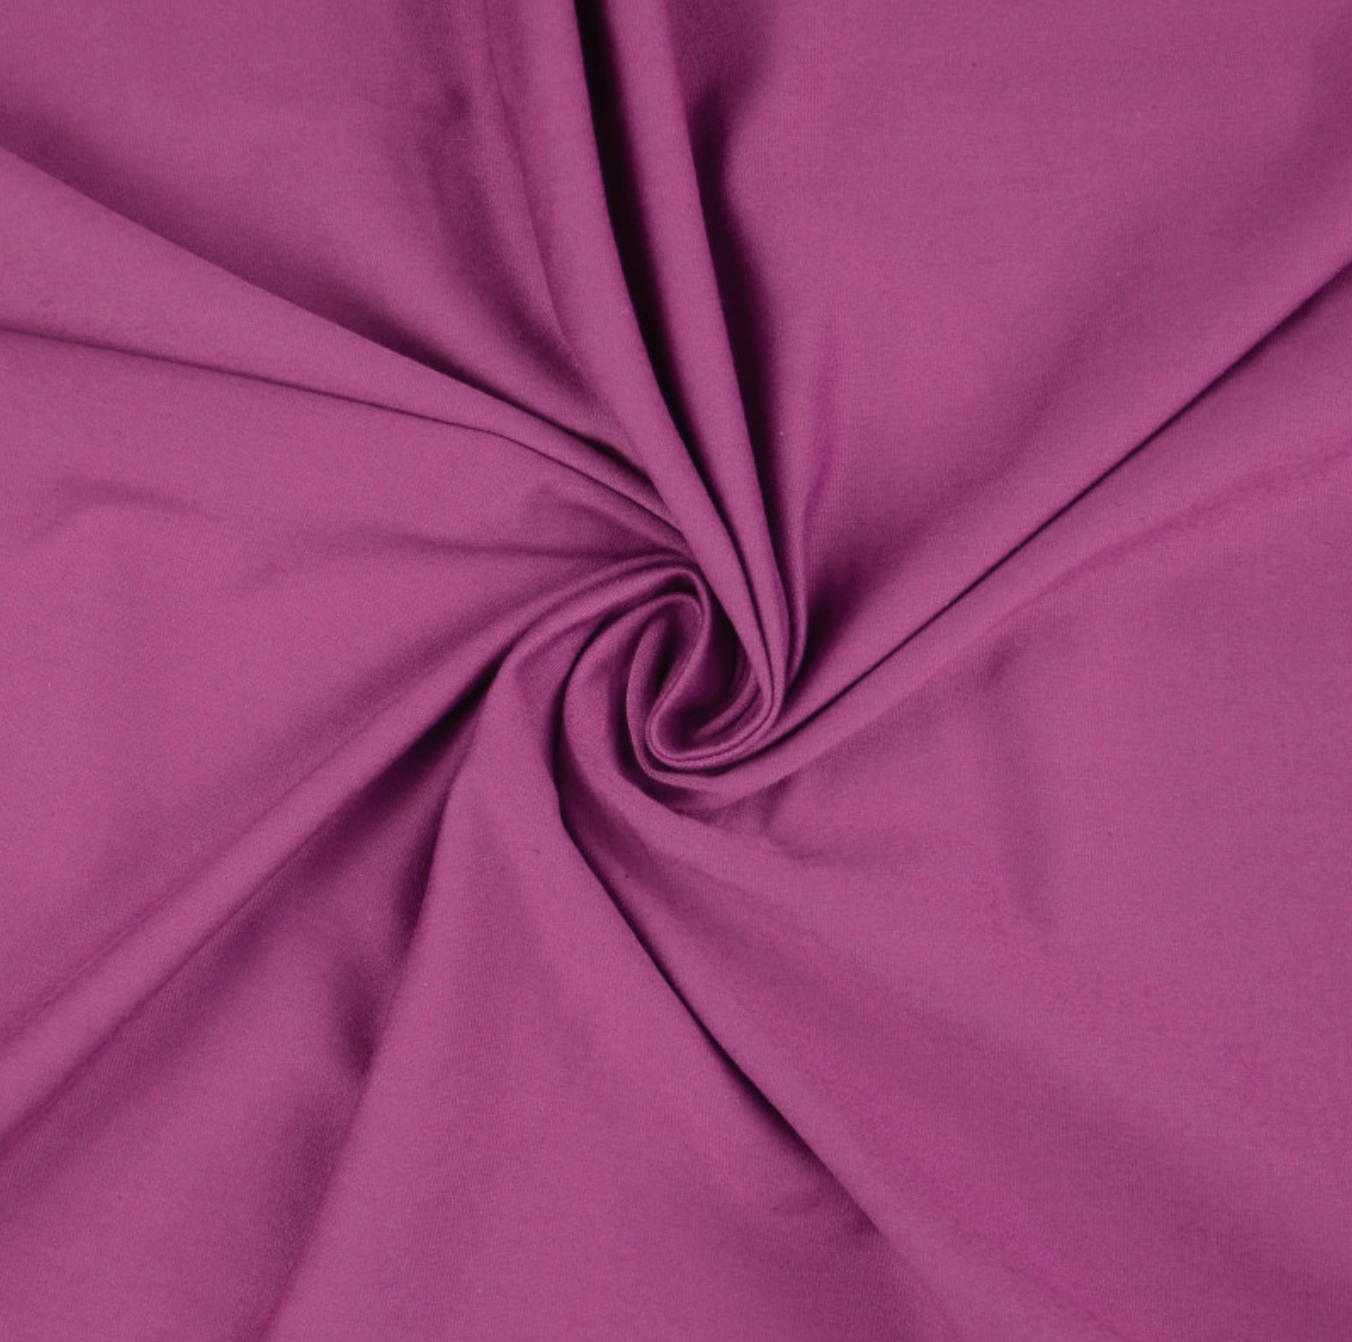 Plum Cotton Jersey Fabric